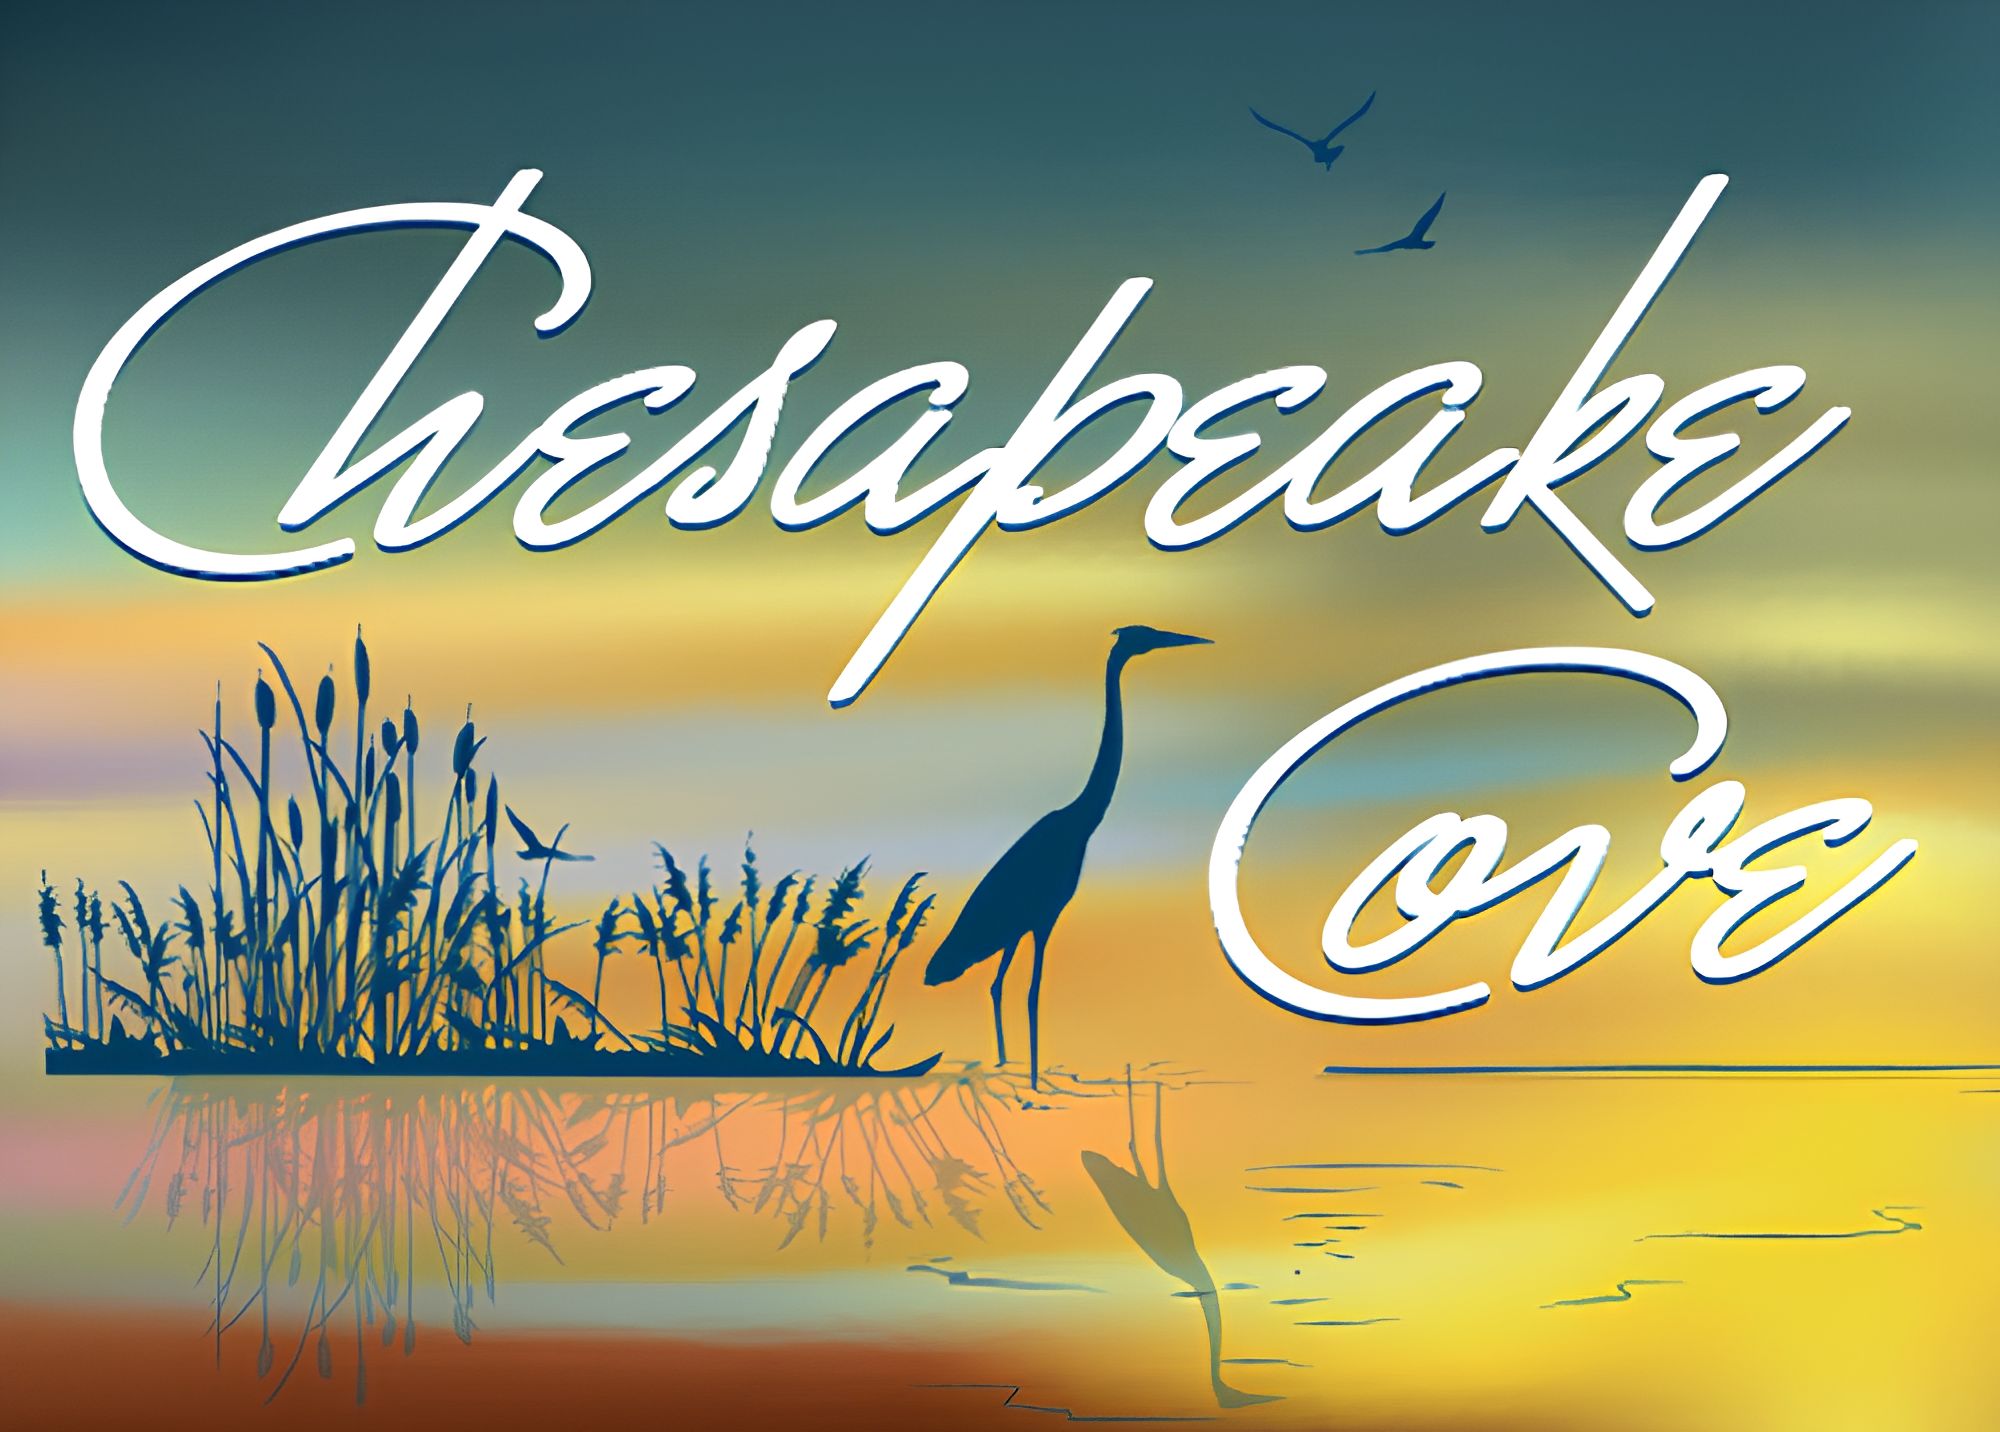 Chesapeake Cove 2